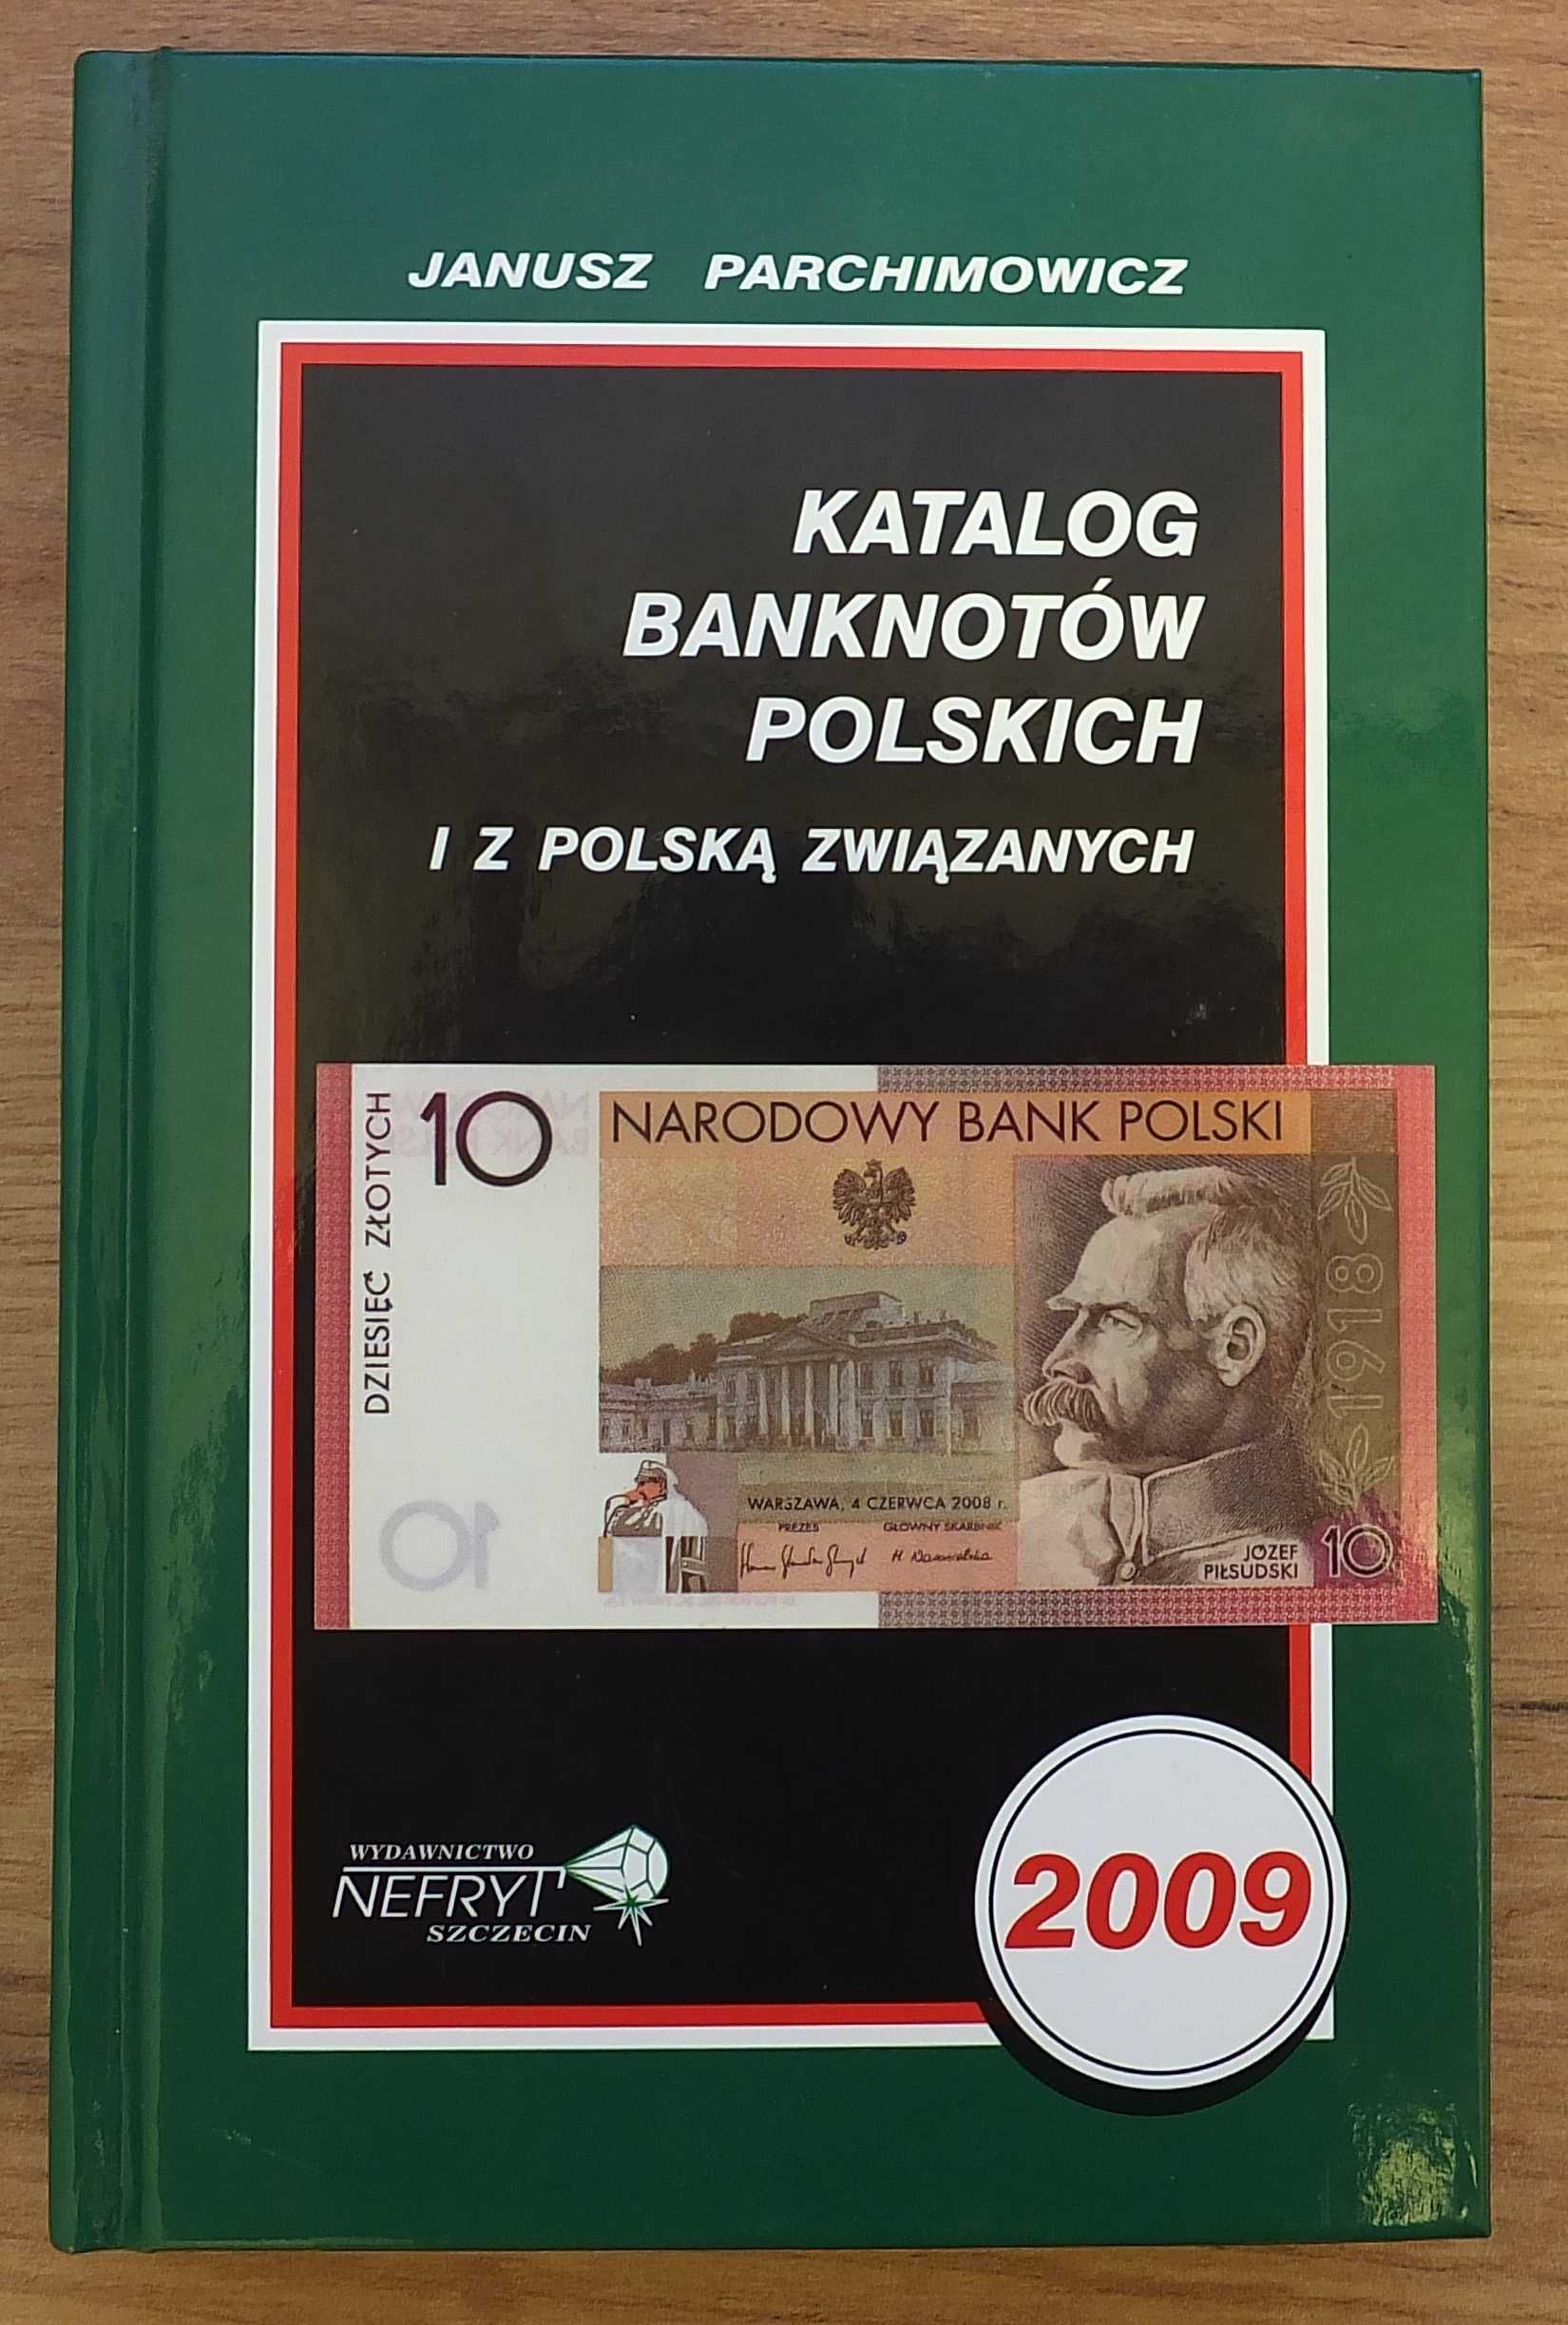 Katalog banknotów polskich 2009 - Parchimowicz